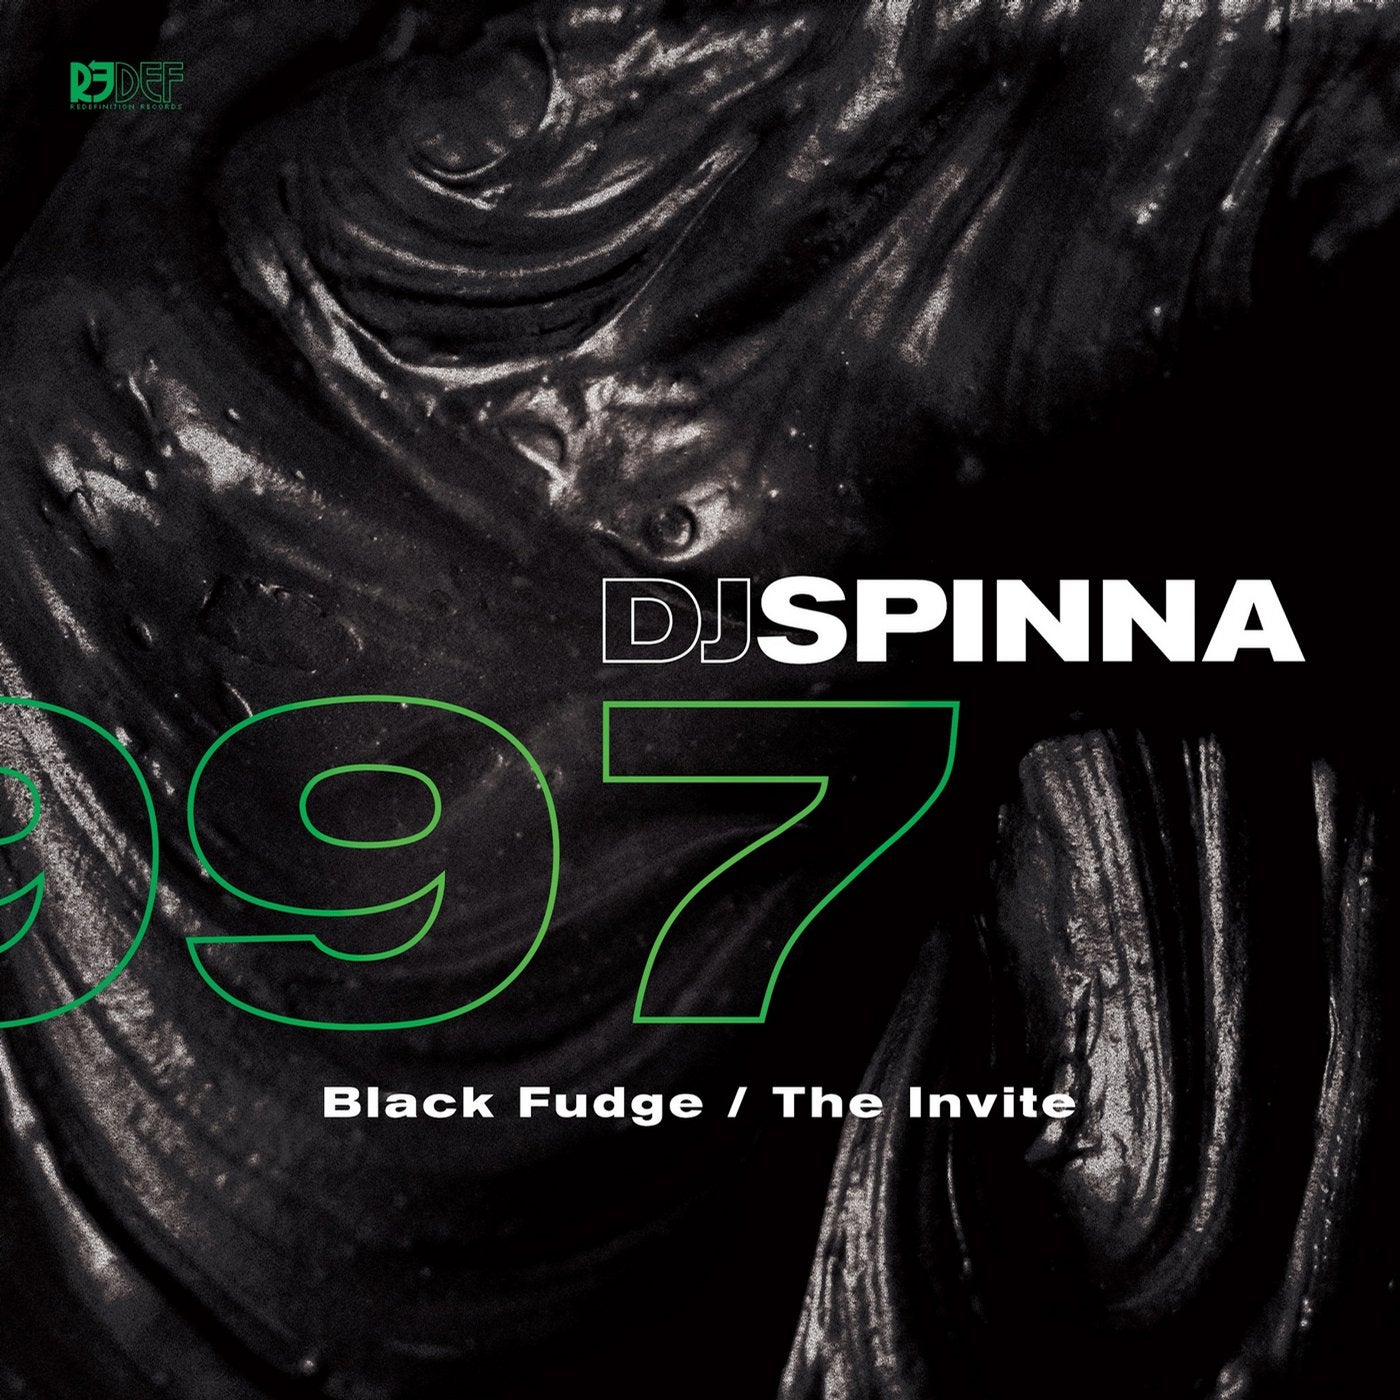 Black Fudge / The Invite